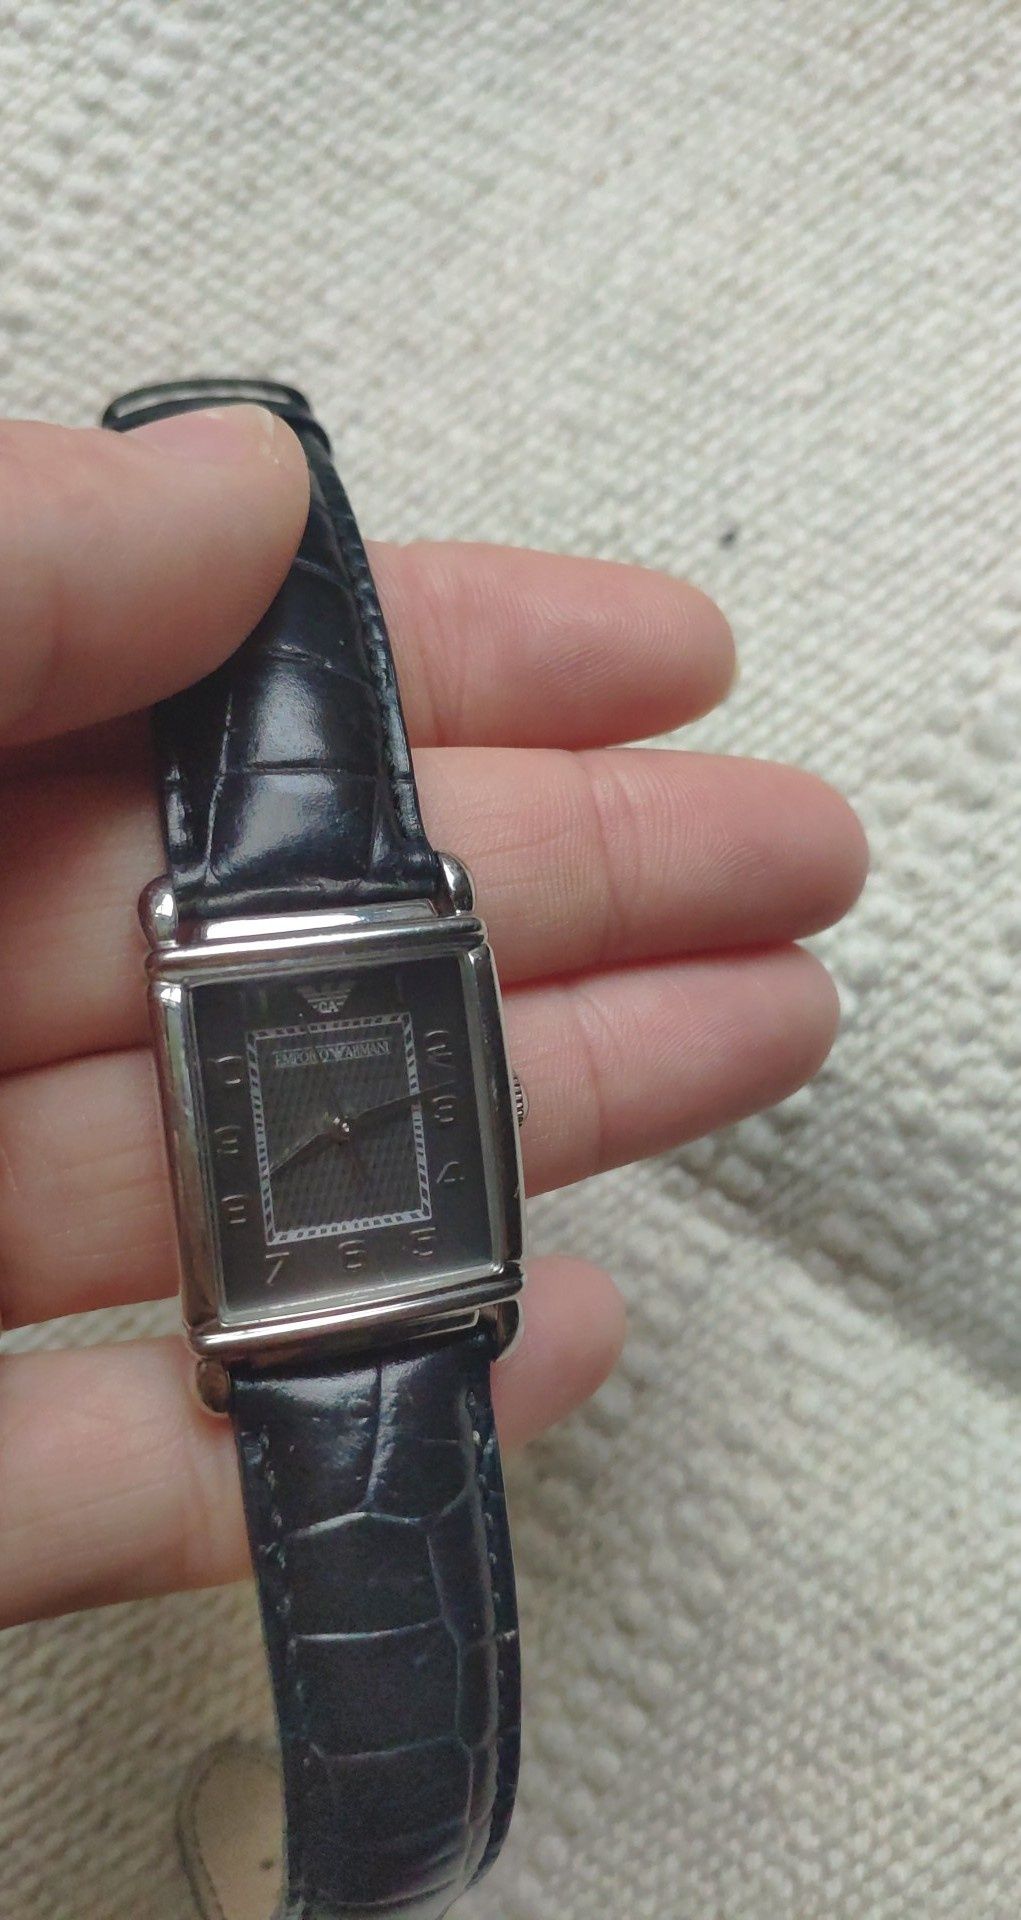 Zegarek Emporio Armani czarny z prostokątną kopertą